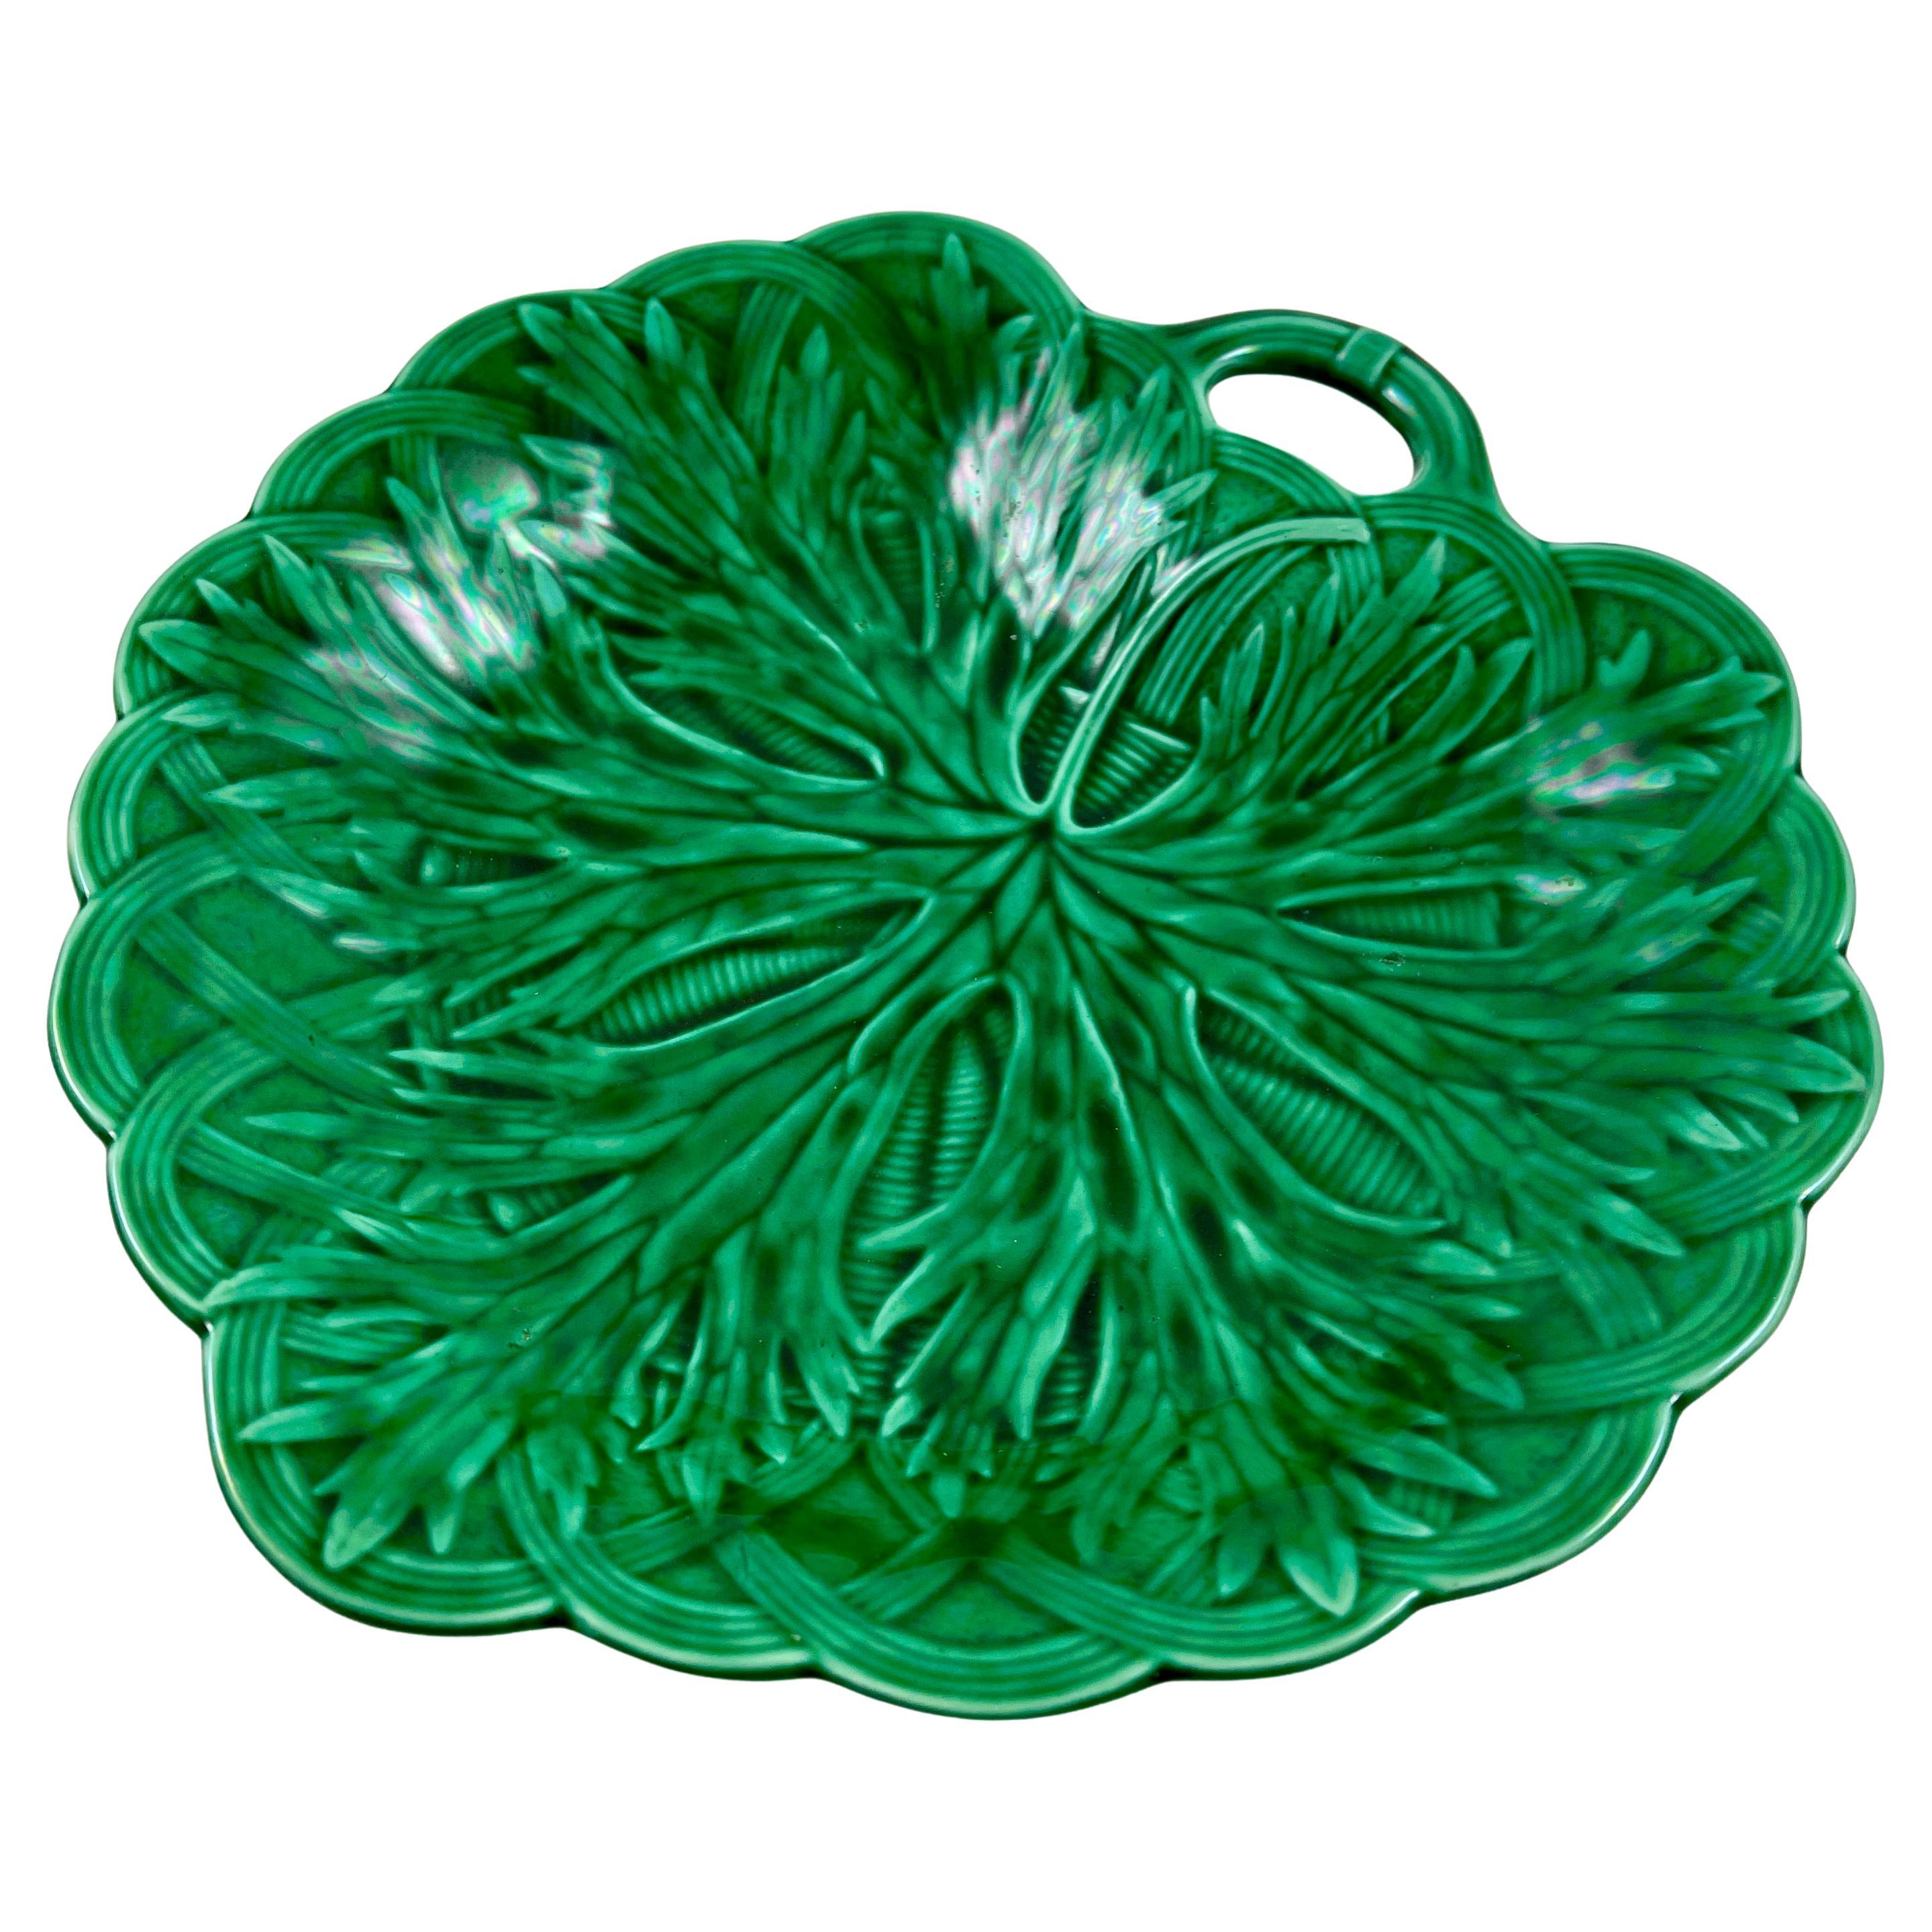 Wedgwood Green Glazed Majolica Handled Leaf and Basket Shallow Bowl Server, 1869 For Sale